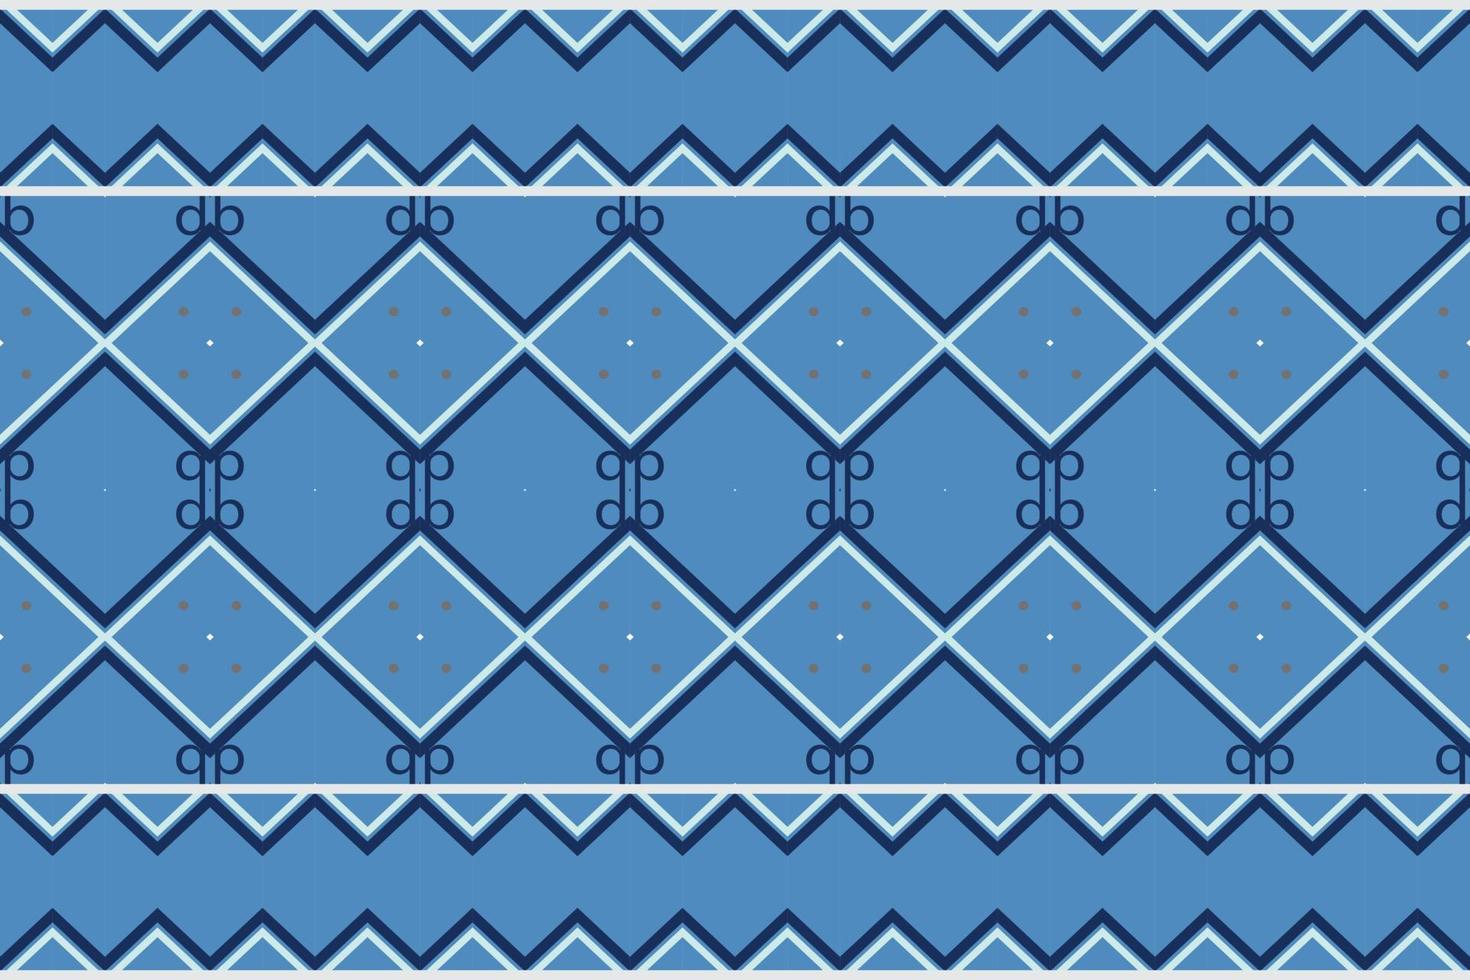 Afrikaanse etnisch damast naadloos patroon achtergrond. meetkundig etnisch oosters patroon traditioneel. etnisch aztec stijl abstract vector illustratie. ontwerp voor afdrukken textuur,stof,sari,sari,tapijt.